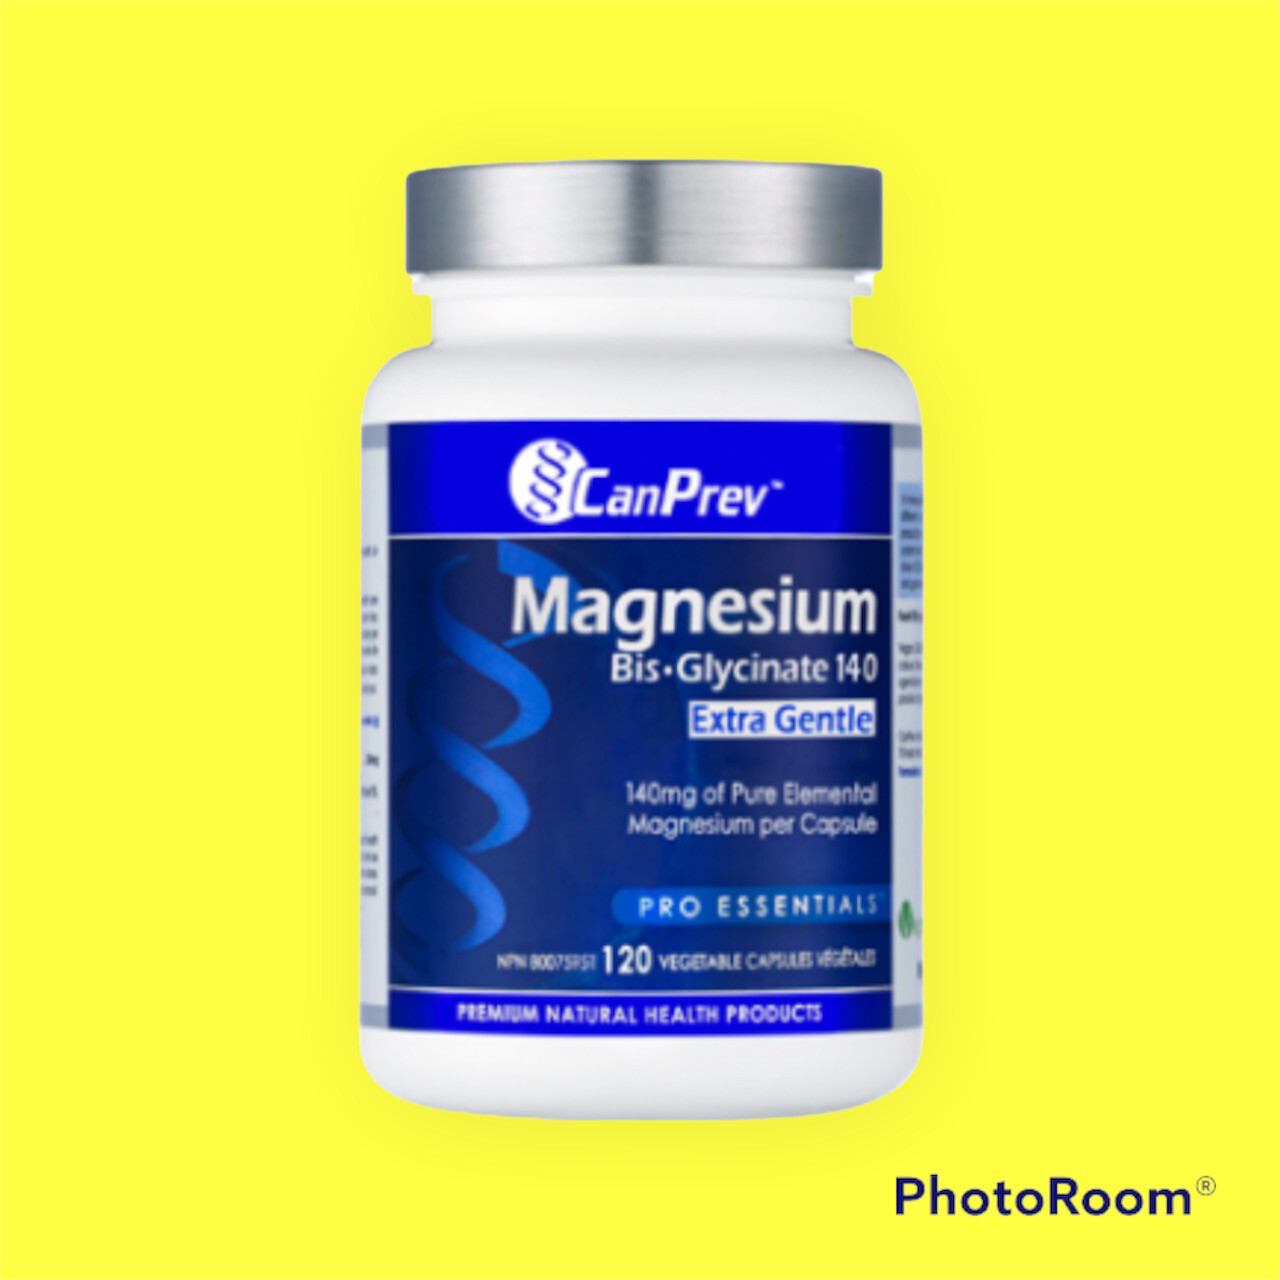 Magnesium Bis-Glycinate 140 Extra Gentle 120 V Caps